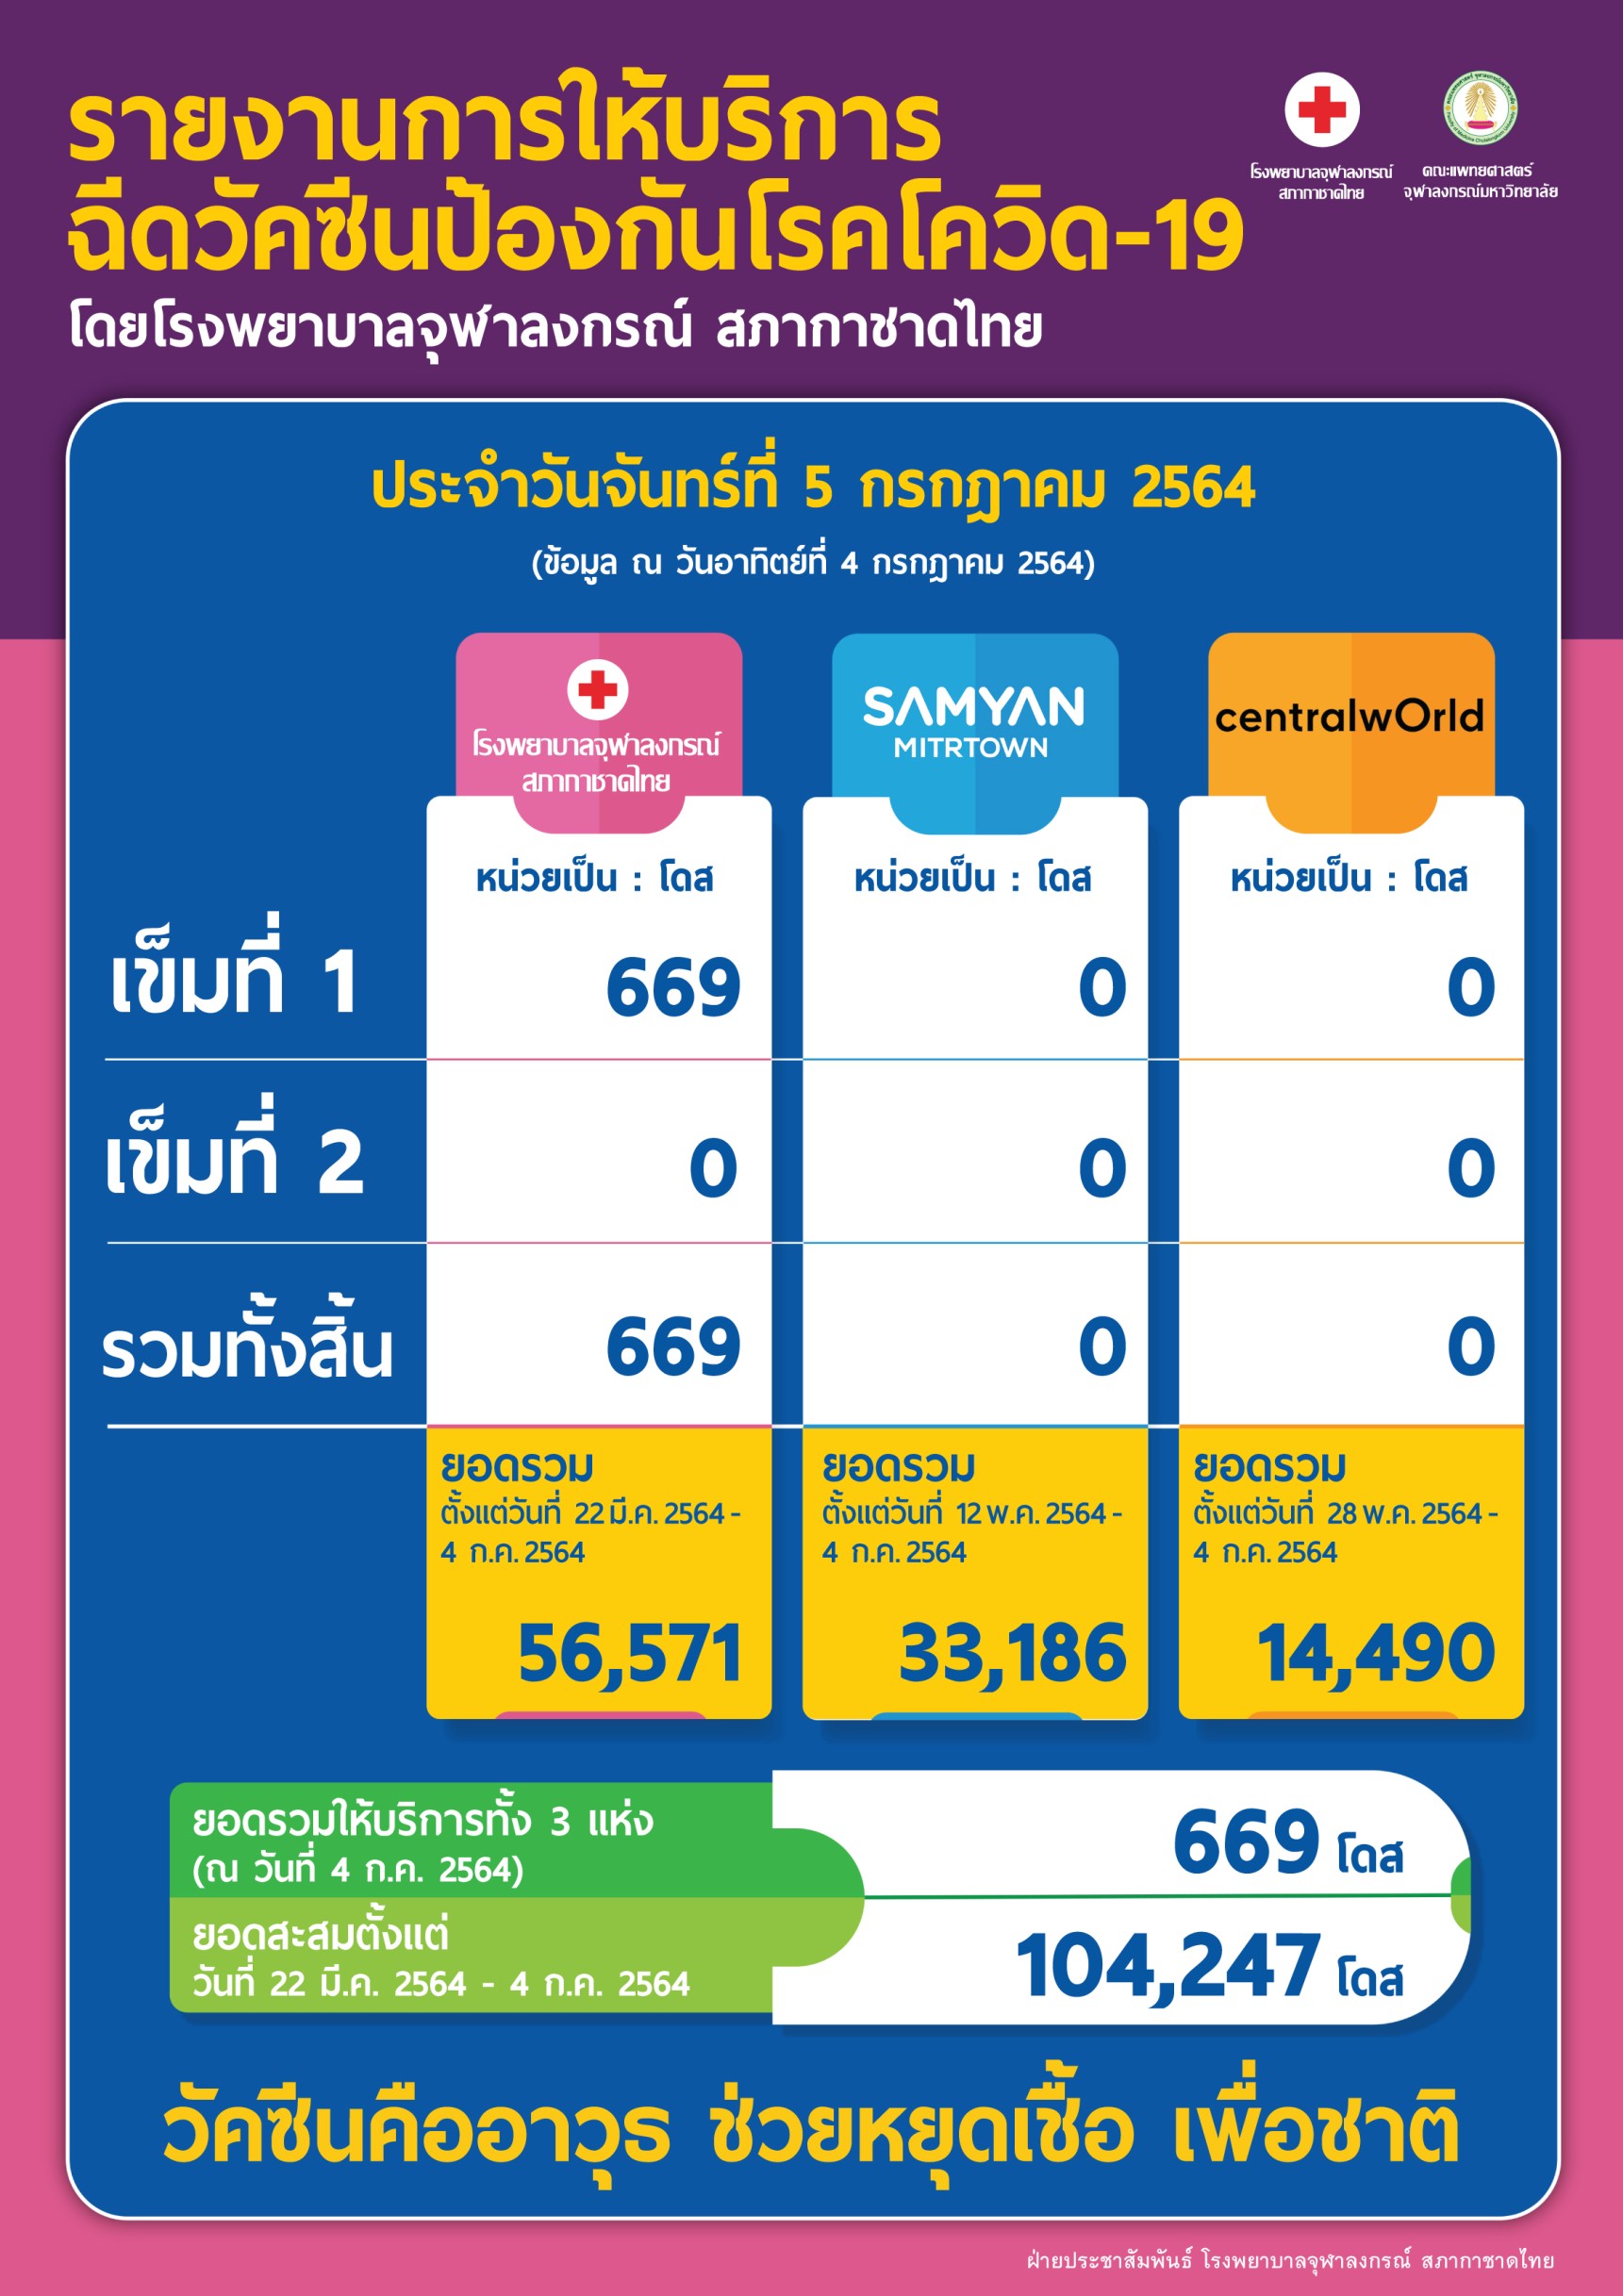 รายงานการให้บริการฉีดวัคซีนป้องกันโรคโควิด-19โดยโรงพยาบาลจุฬาลงกรณ์ สภากาชาดไทย ประจำวันจันทร์ที่ 5 กรกฎาคม 2564